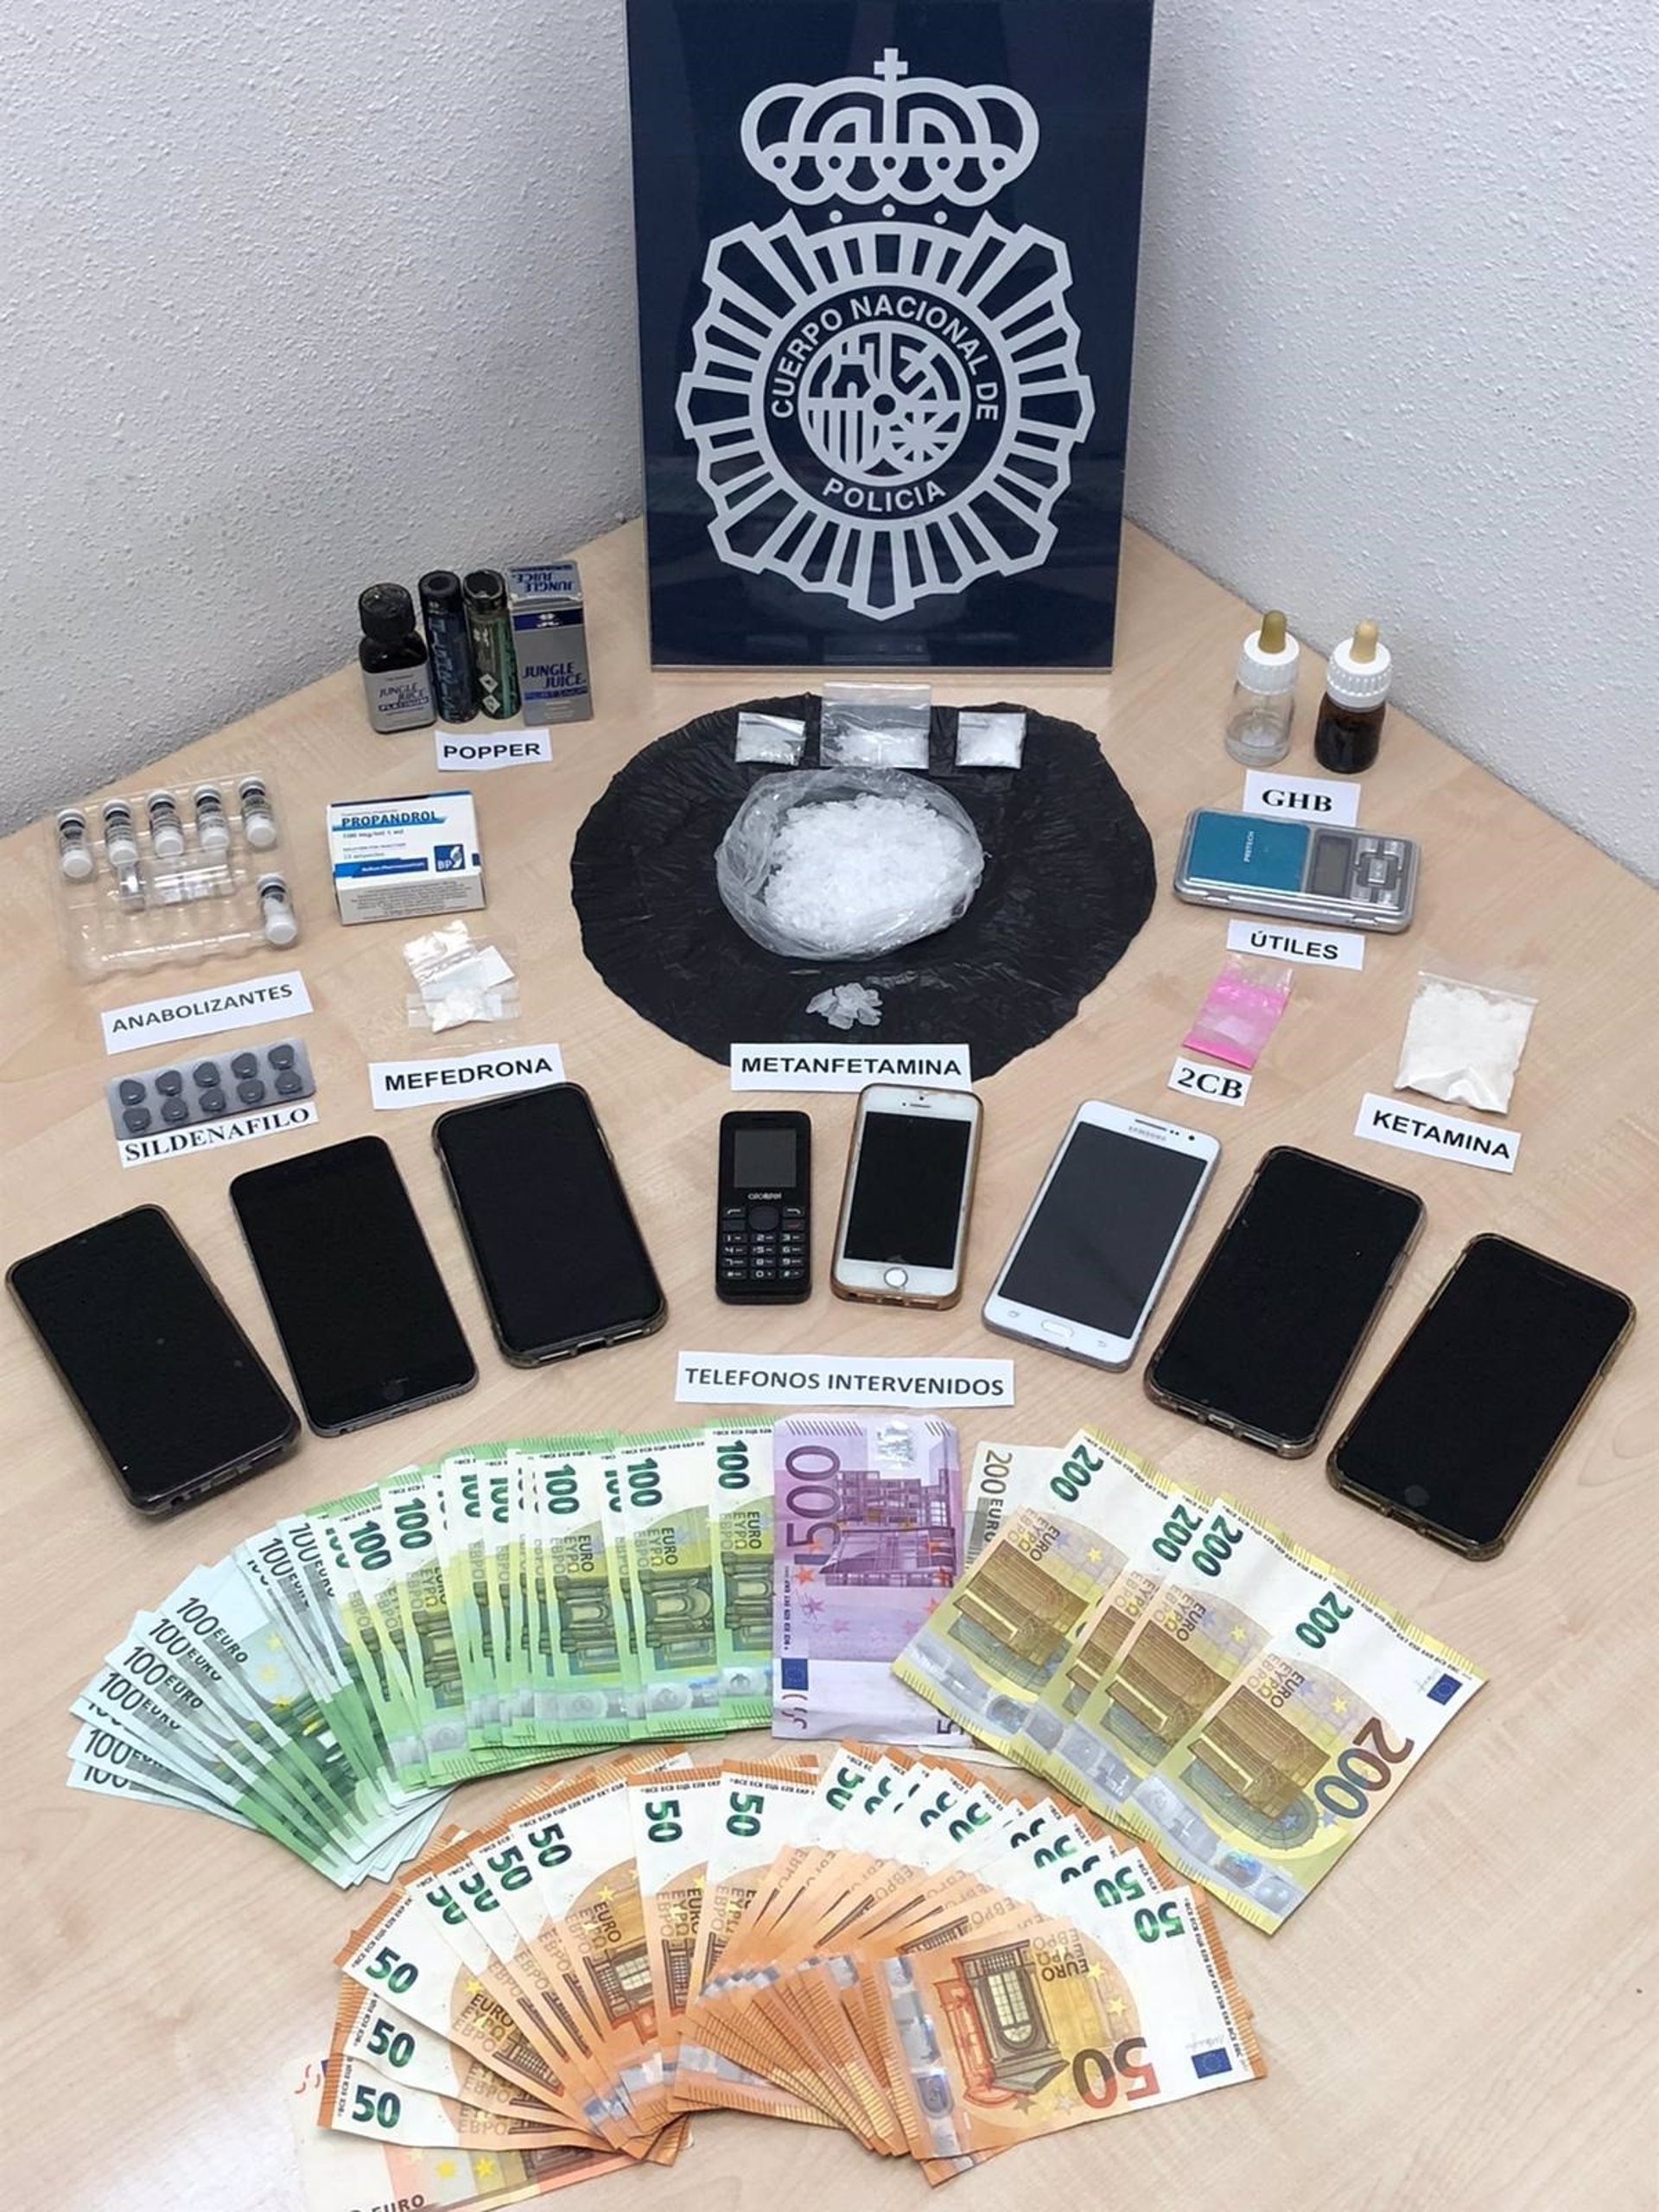 La policía halló en la casa de Rafael Amargo drogas sintéticas, 8 móviles y 6.000 euros en metálico